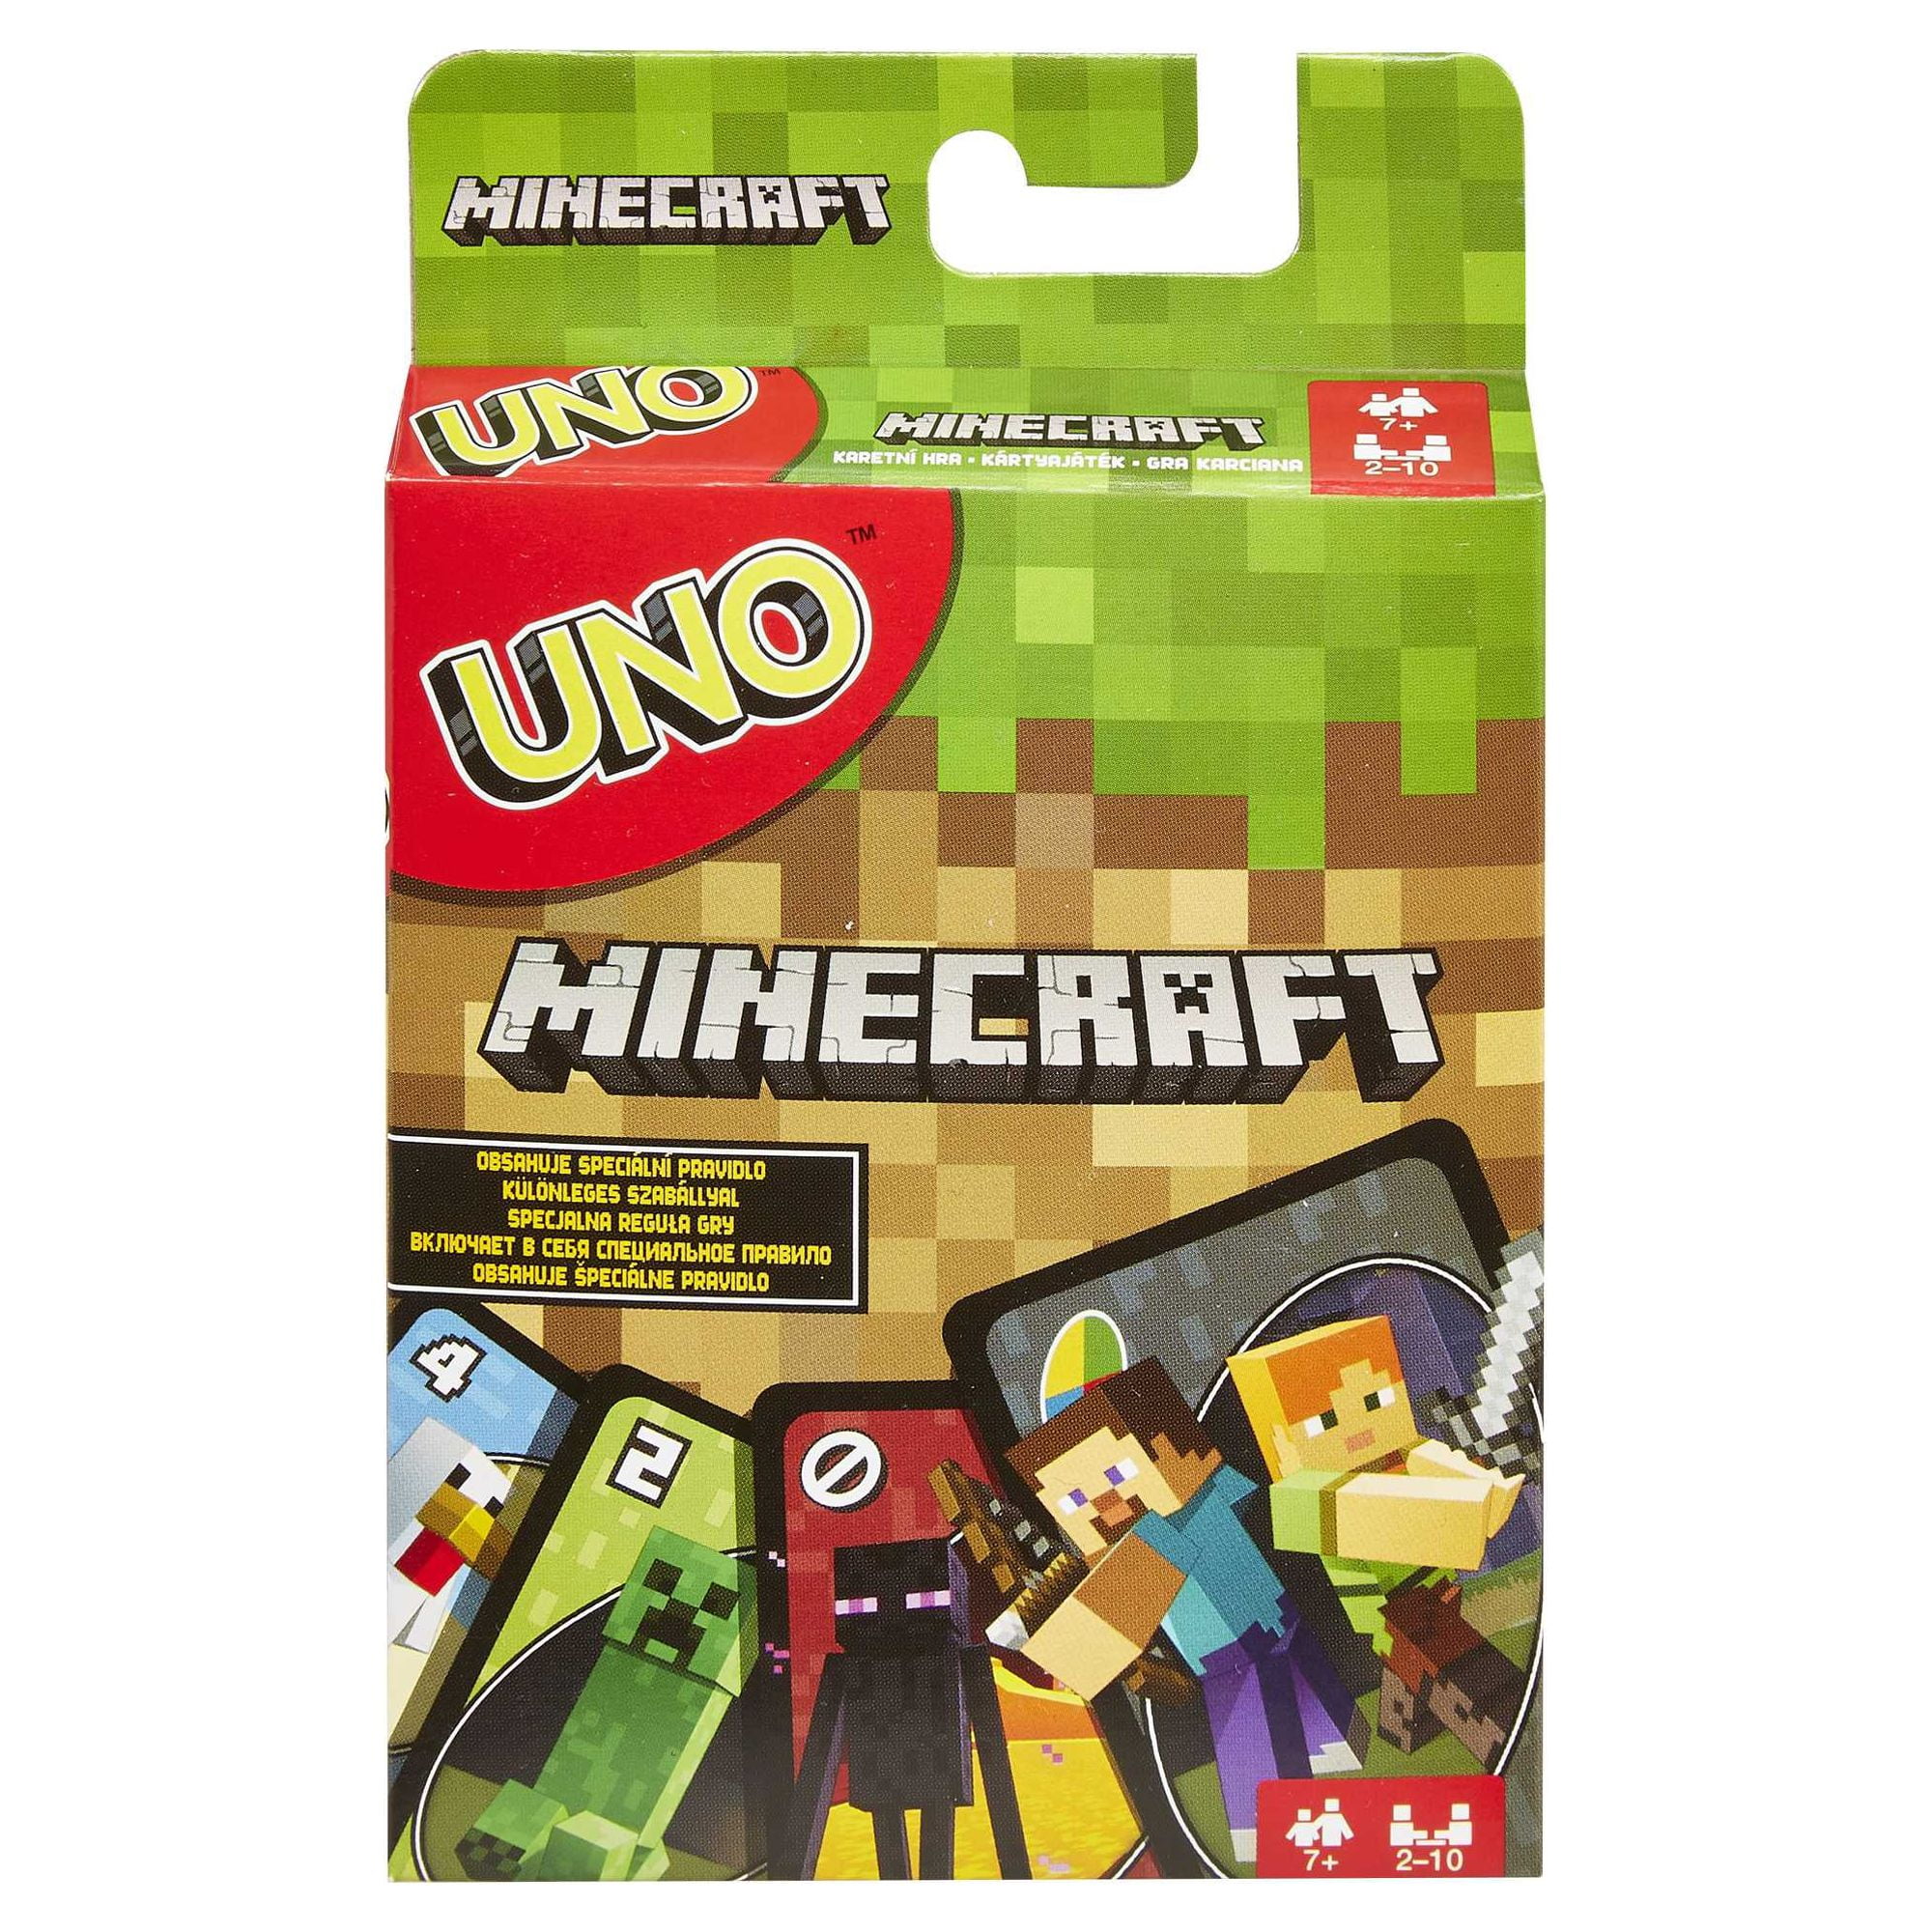 Uno Card Game - Minecraft